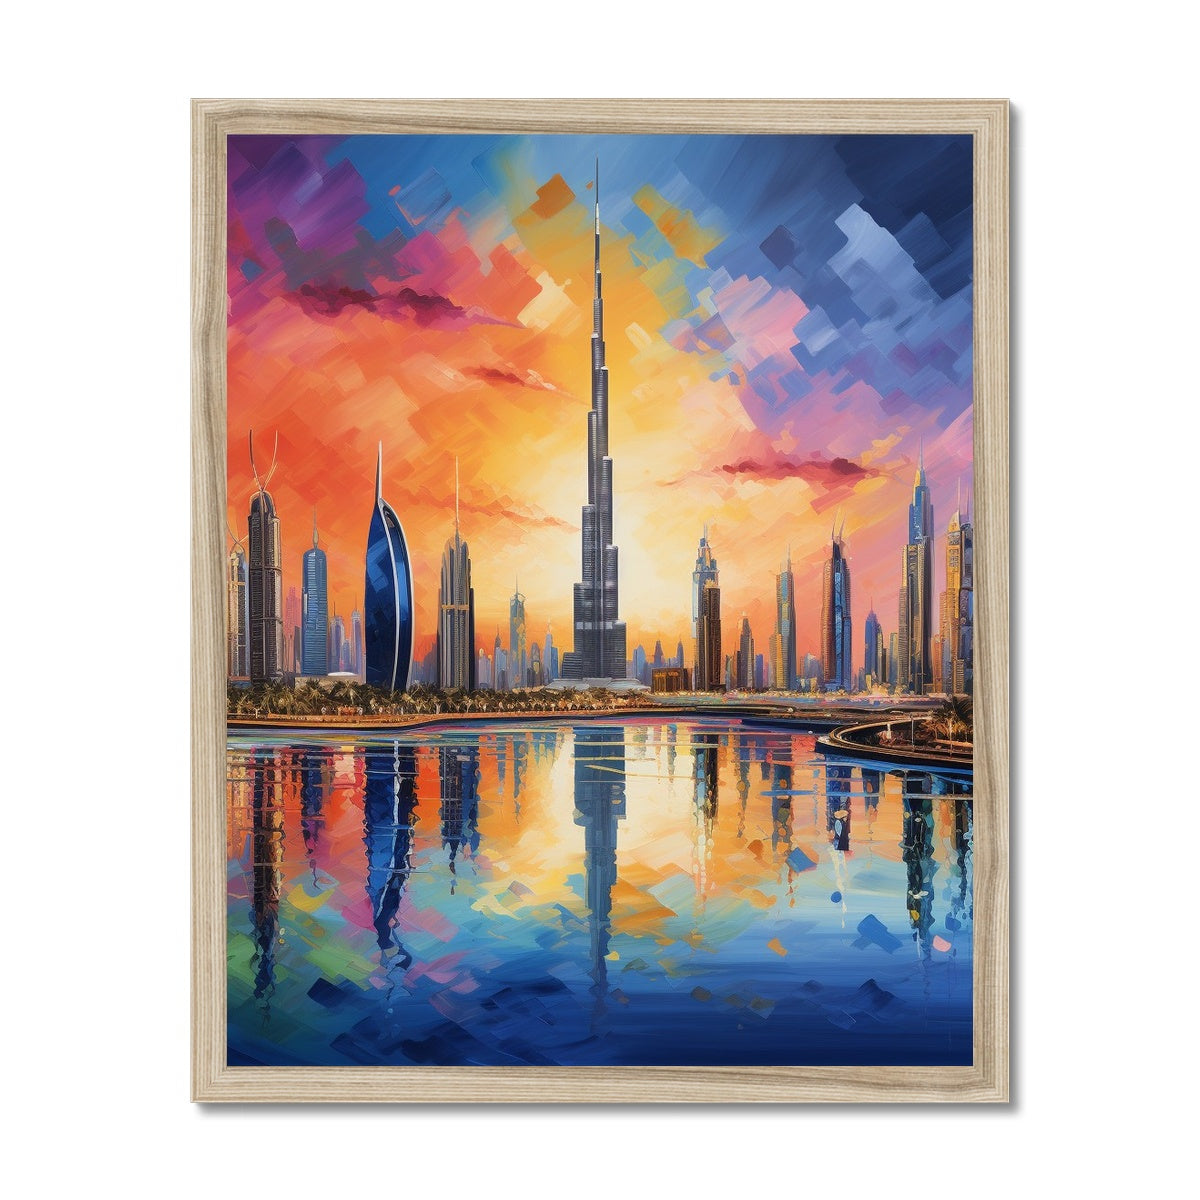 Downtown, Dubai Framed Print